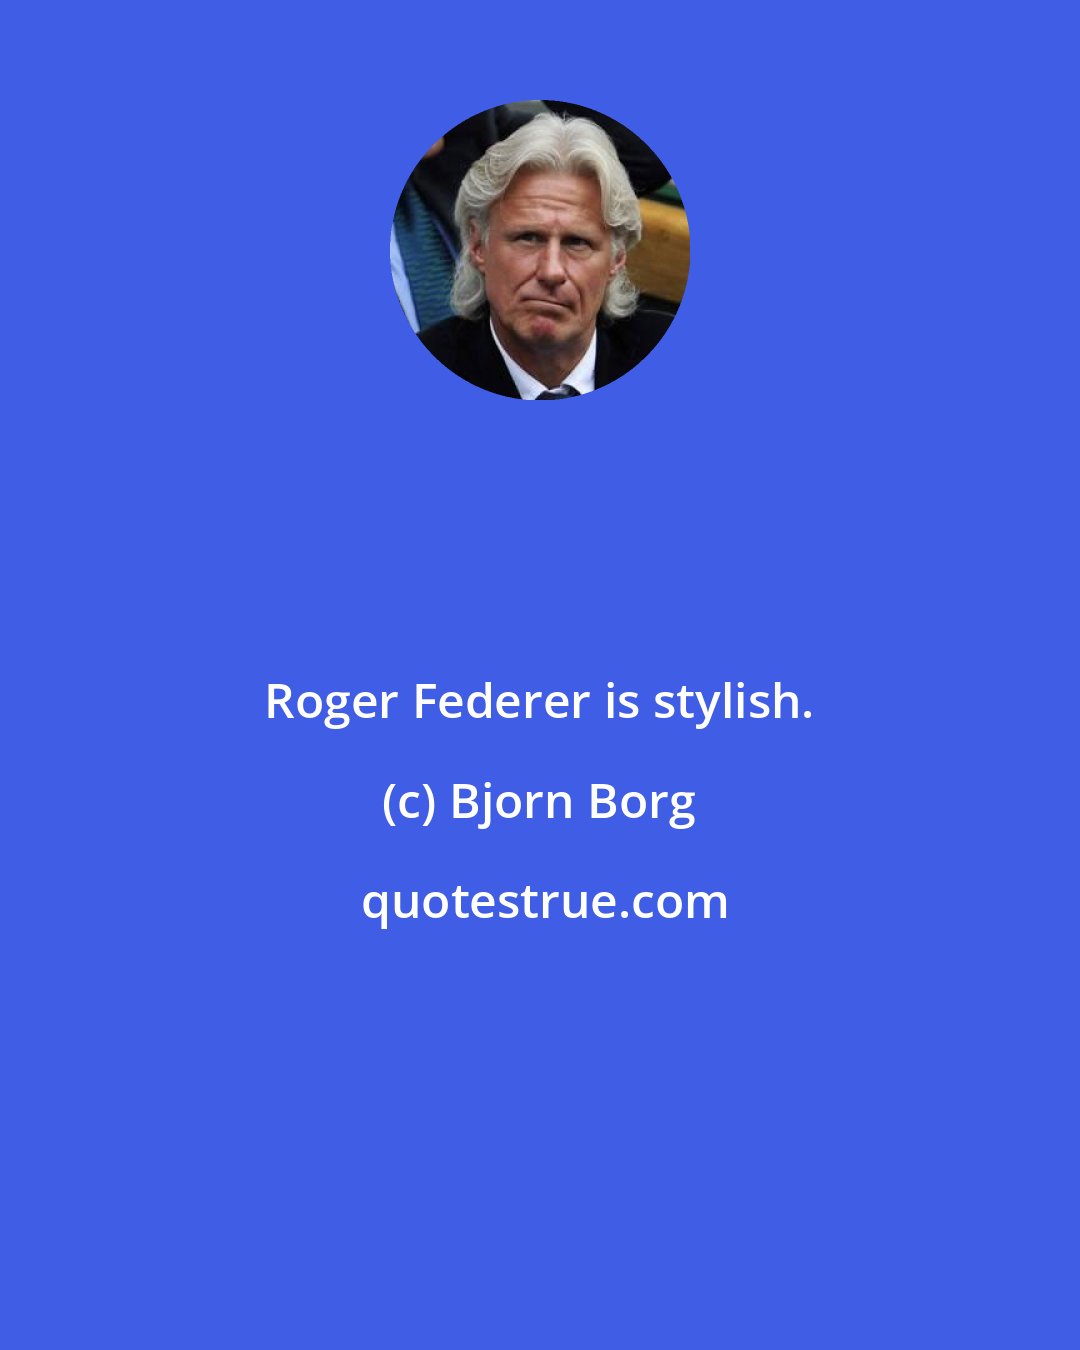 Bjorn Borg: Roger Federer is stylish.